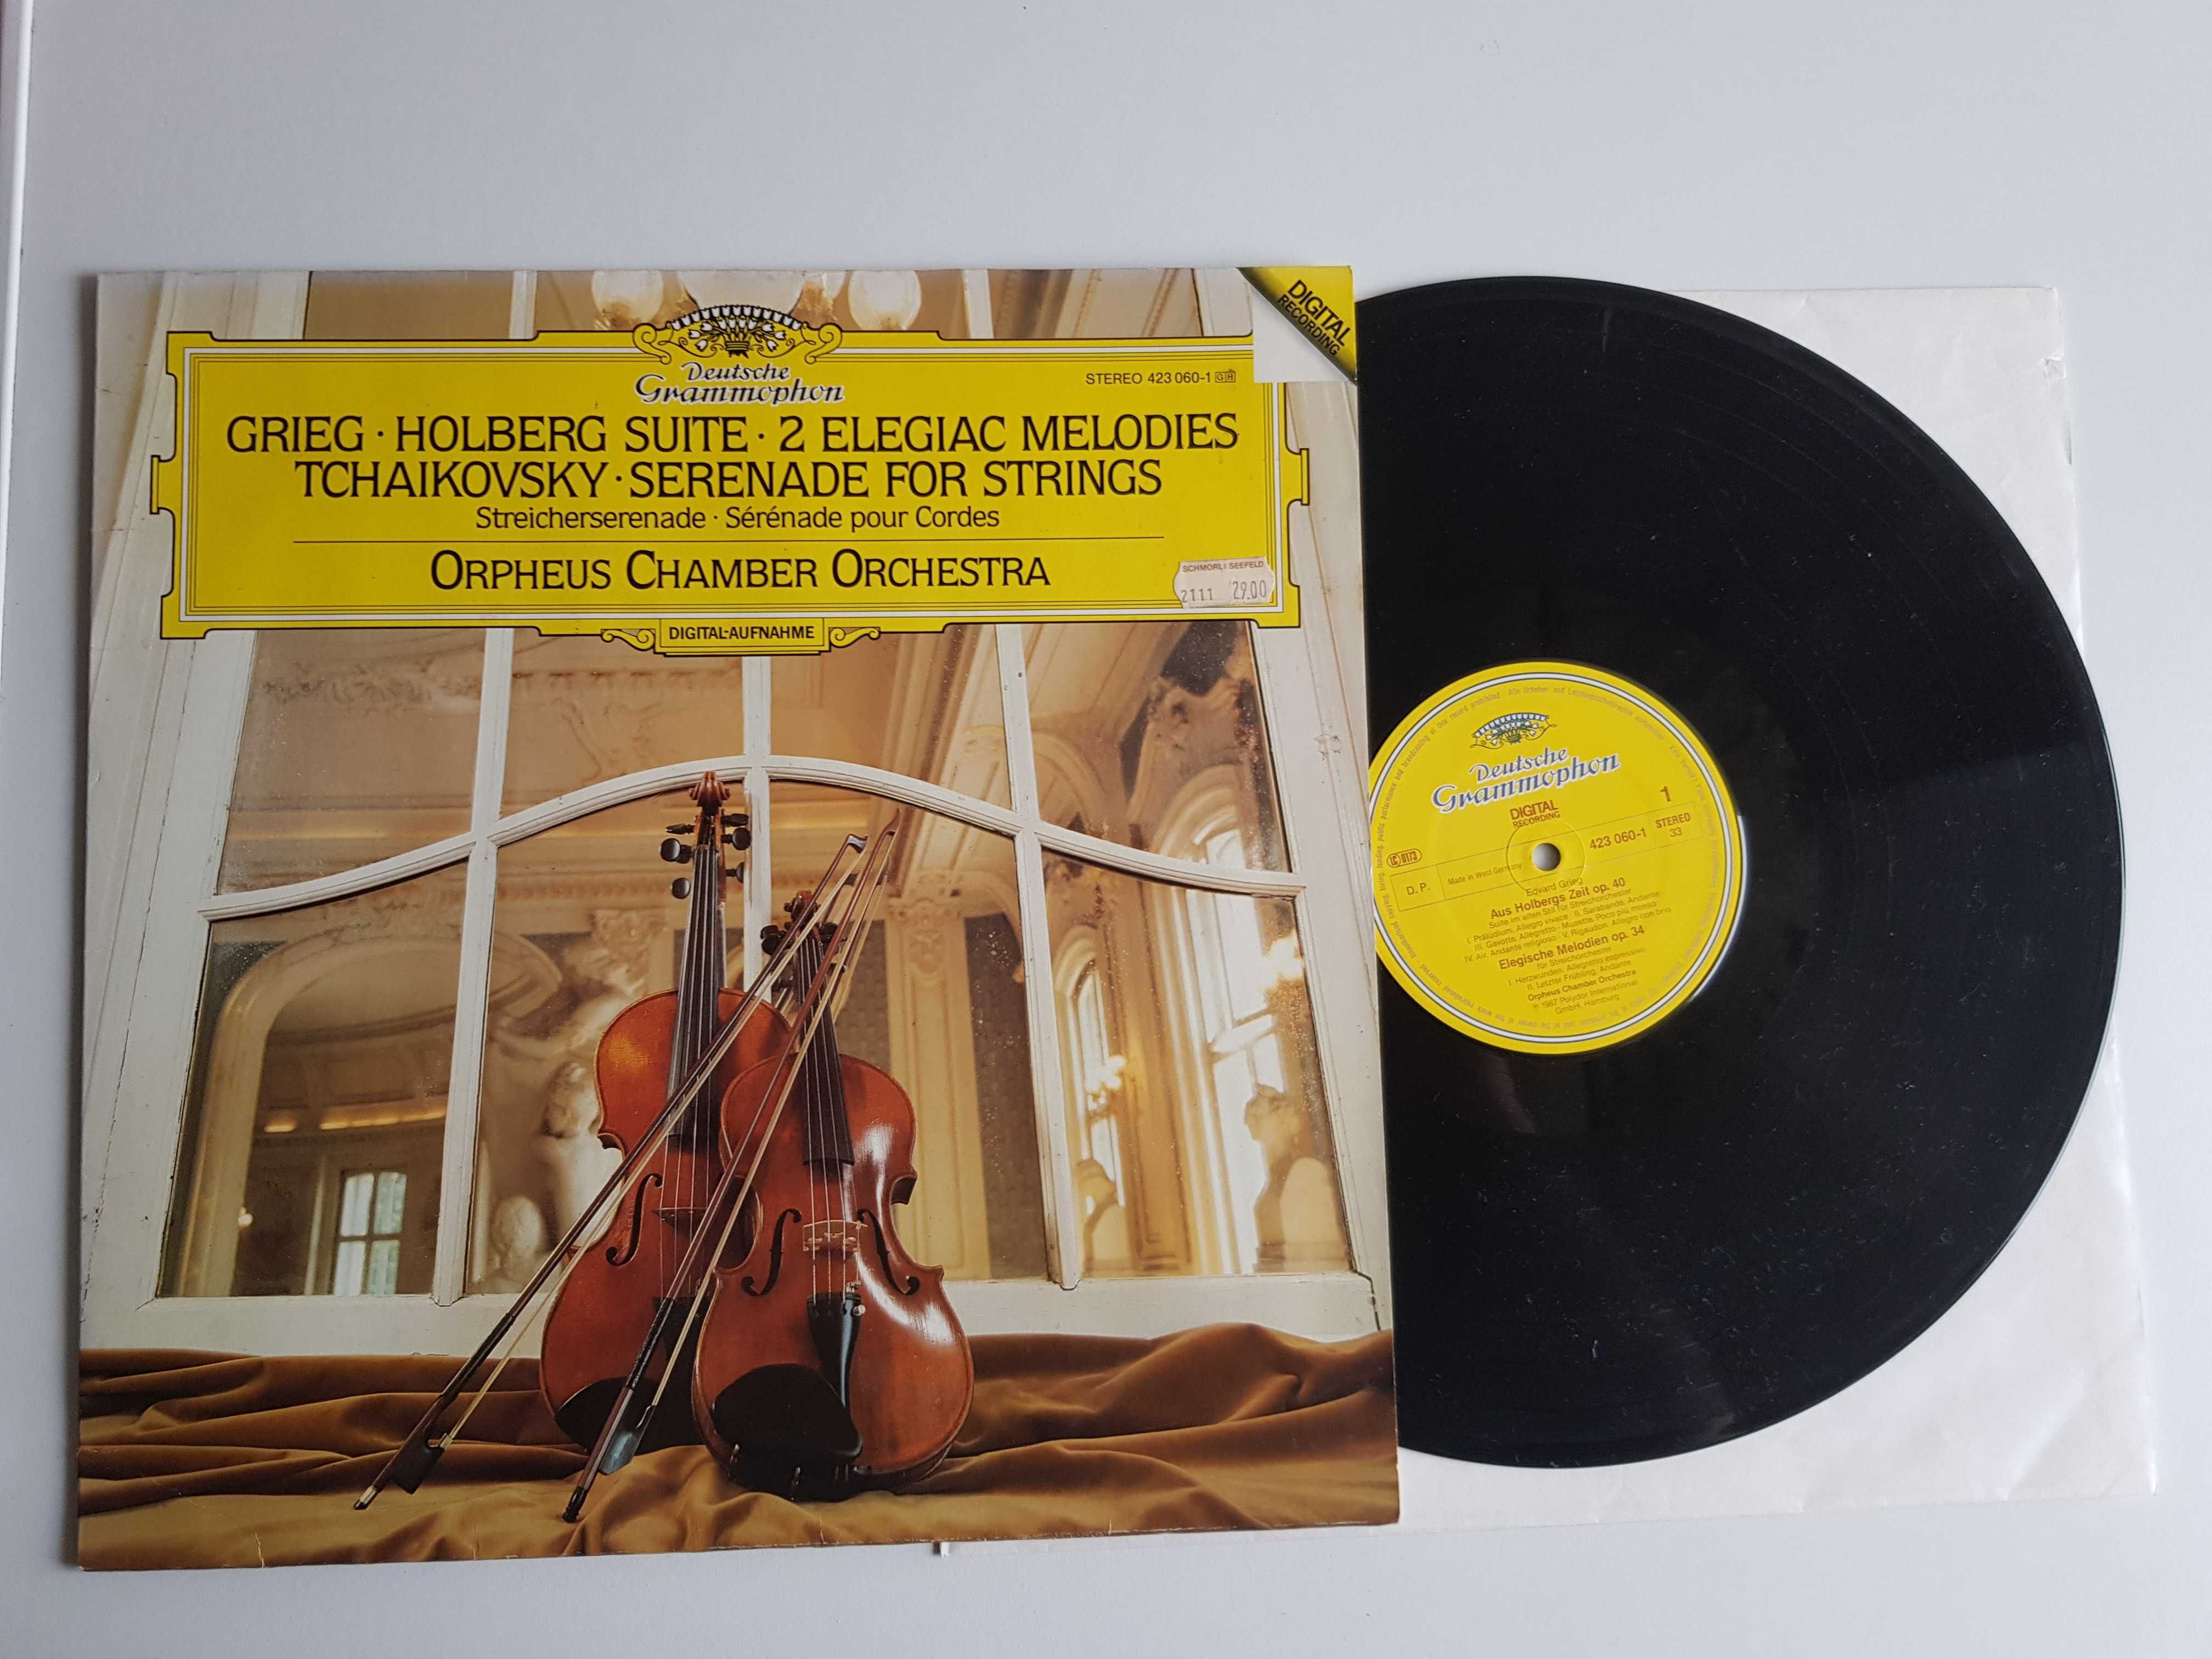 Holberg Suite - 2 Elegiac Melodies - Serenade For Strings LP*4734